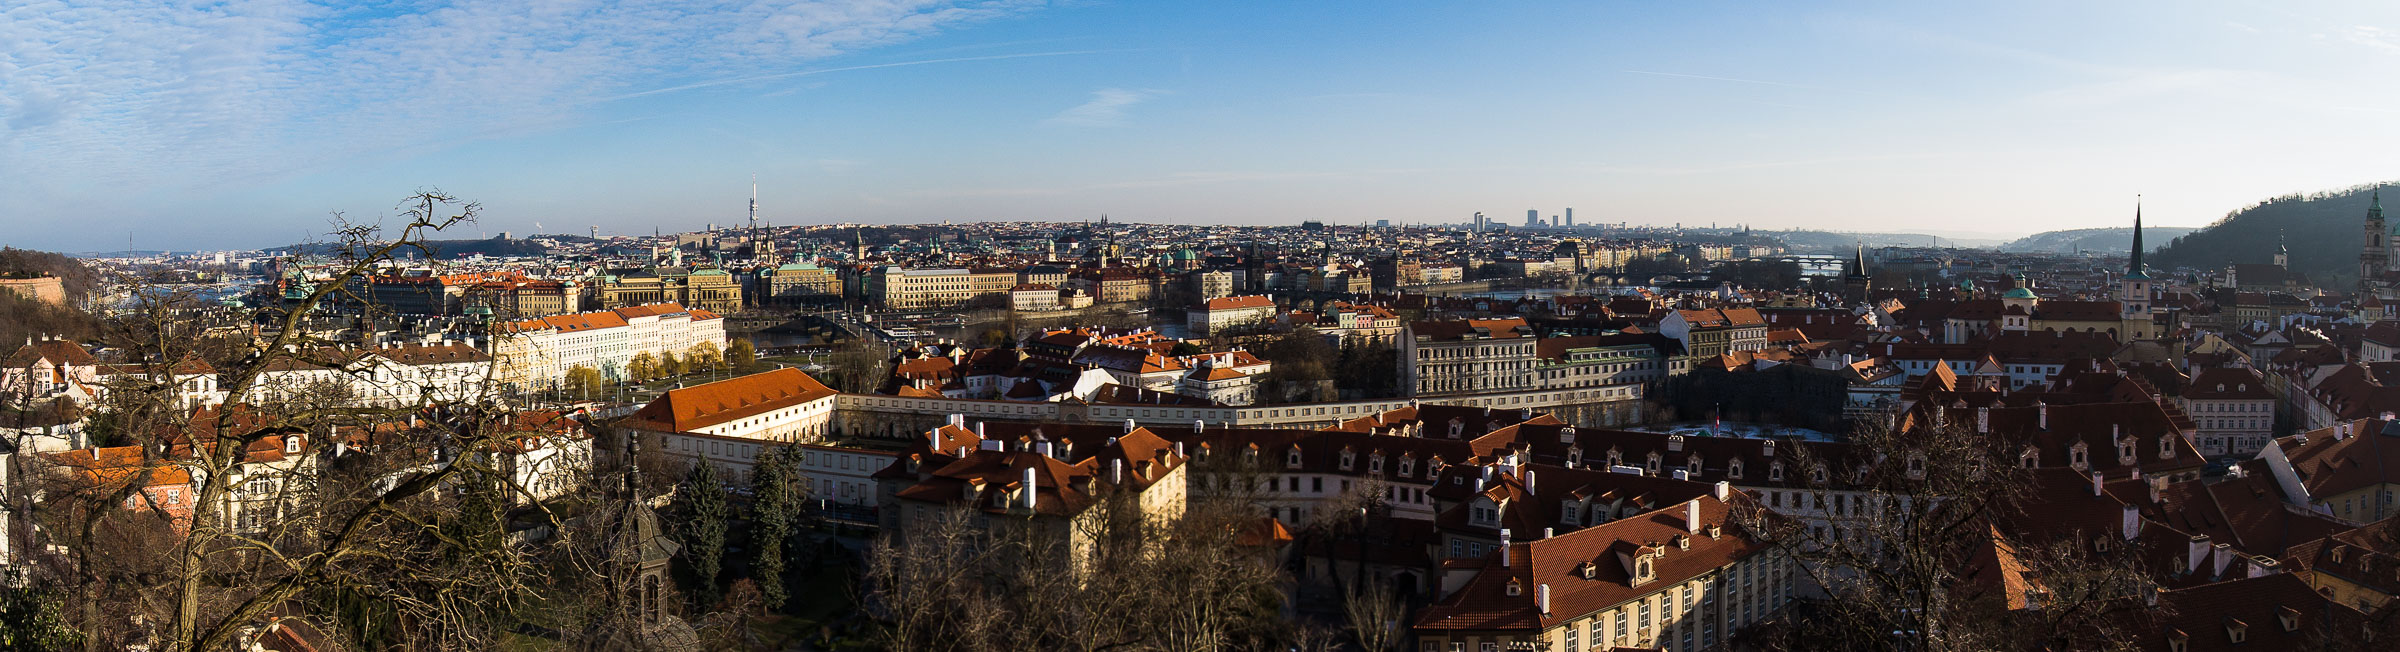 Panorama Pragi widziana z murów praskiego zamku